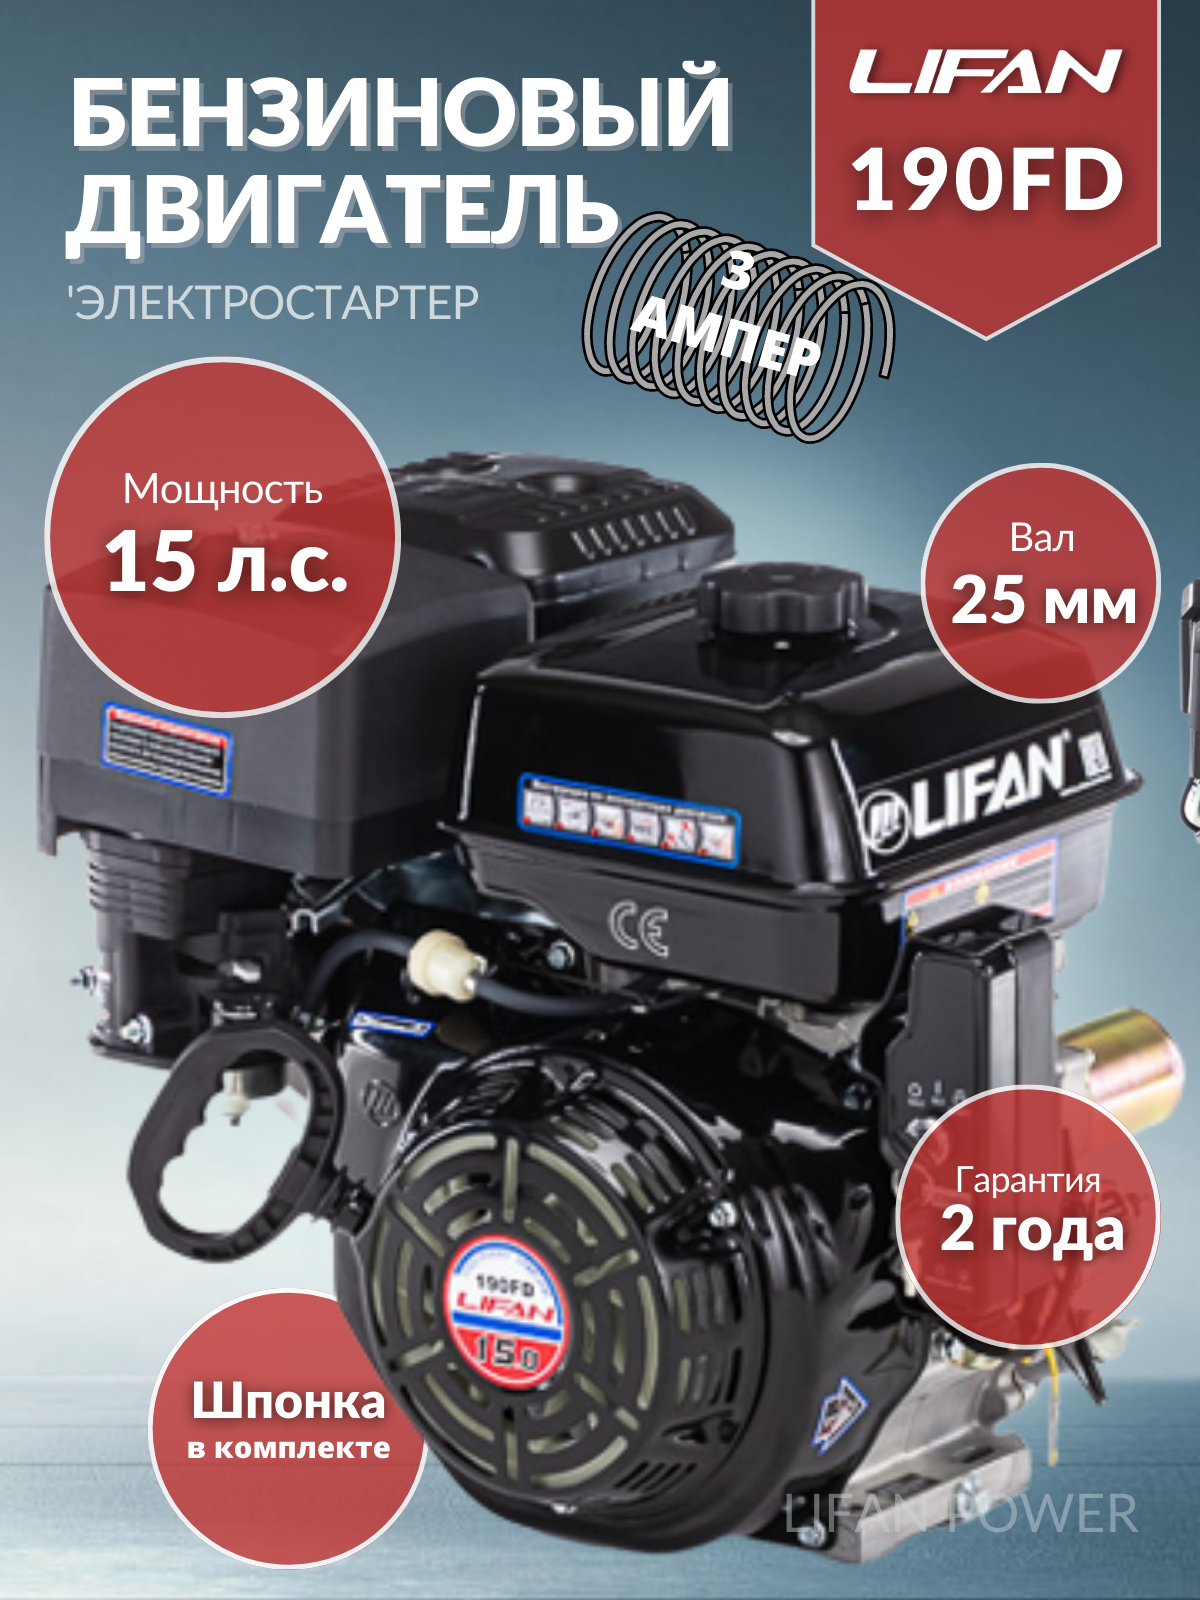 Бензиновый двигатель LIFAN 190FD D25 3A 15 л.с.